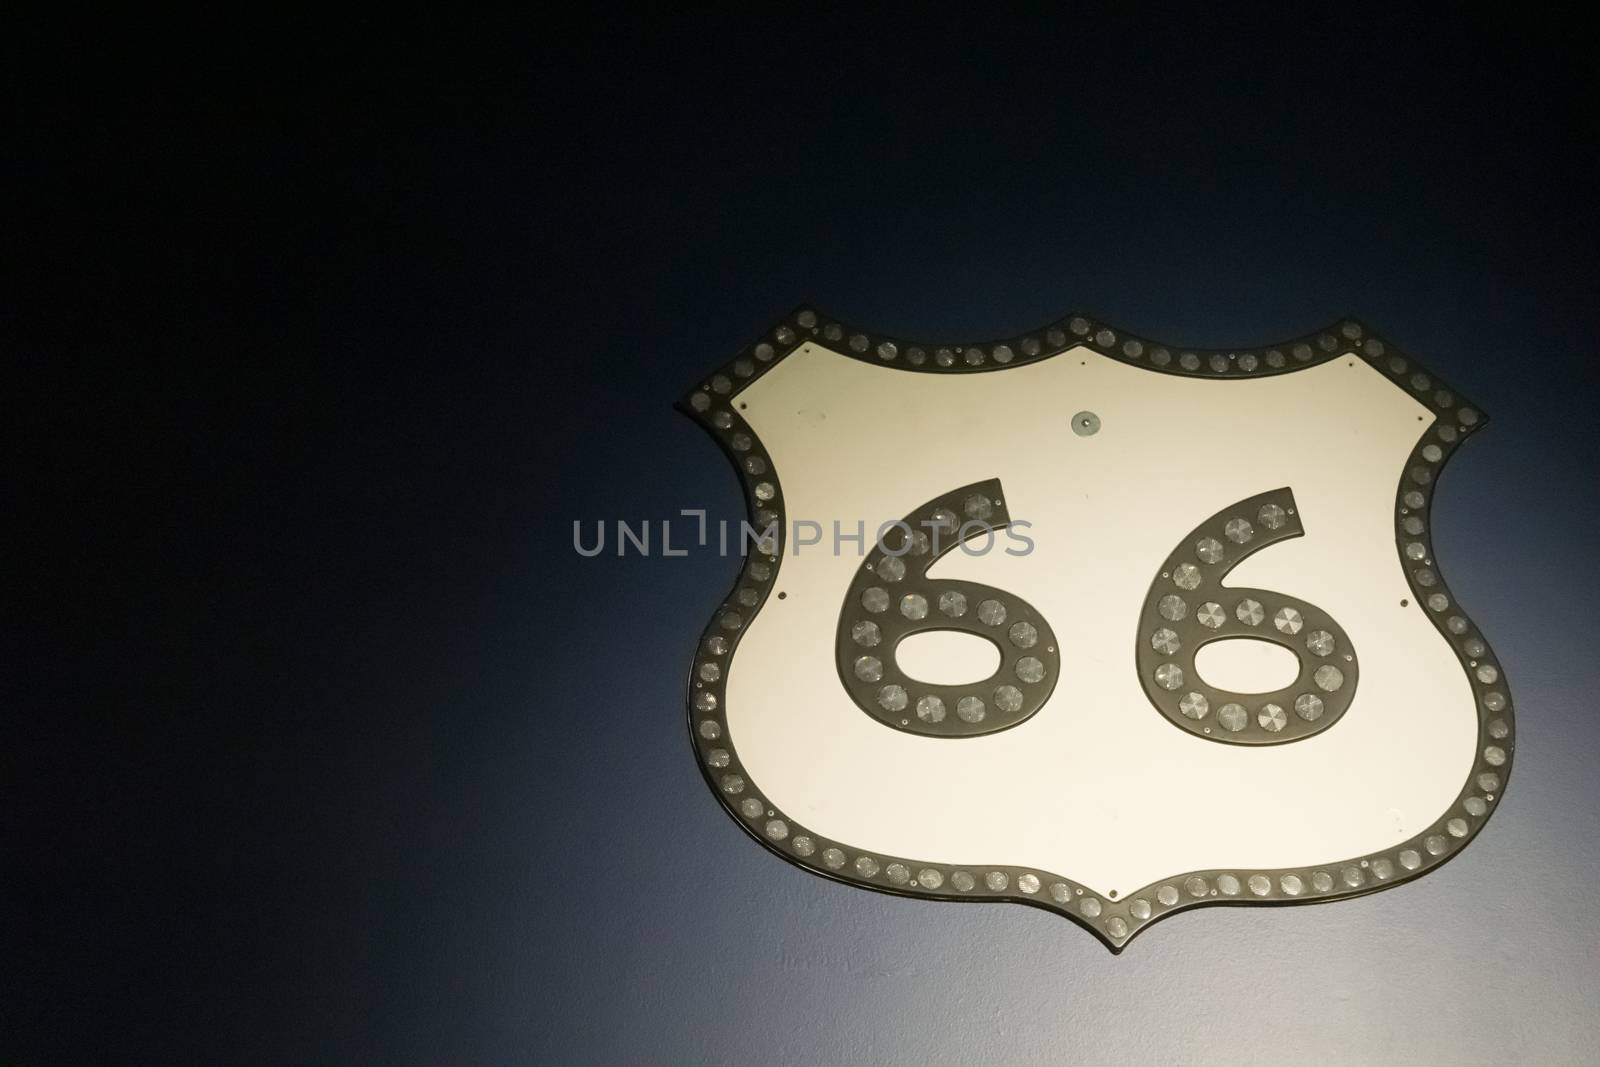 Vintage Route 66 sheild sign on dark background by brians101